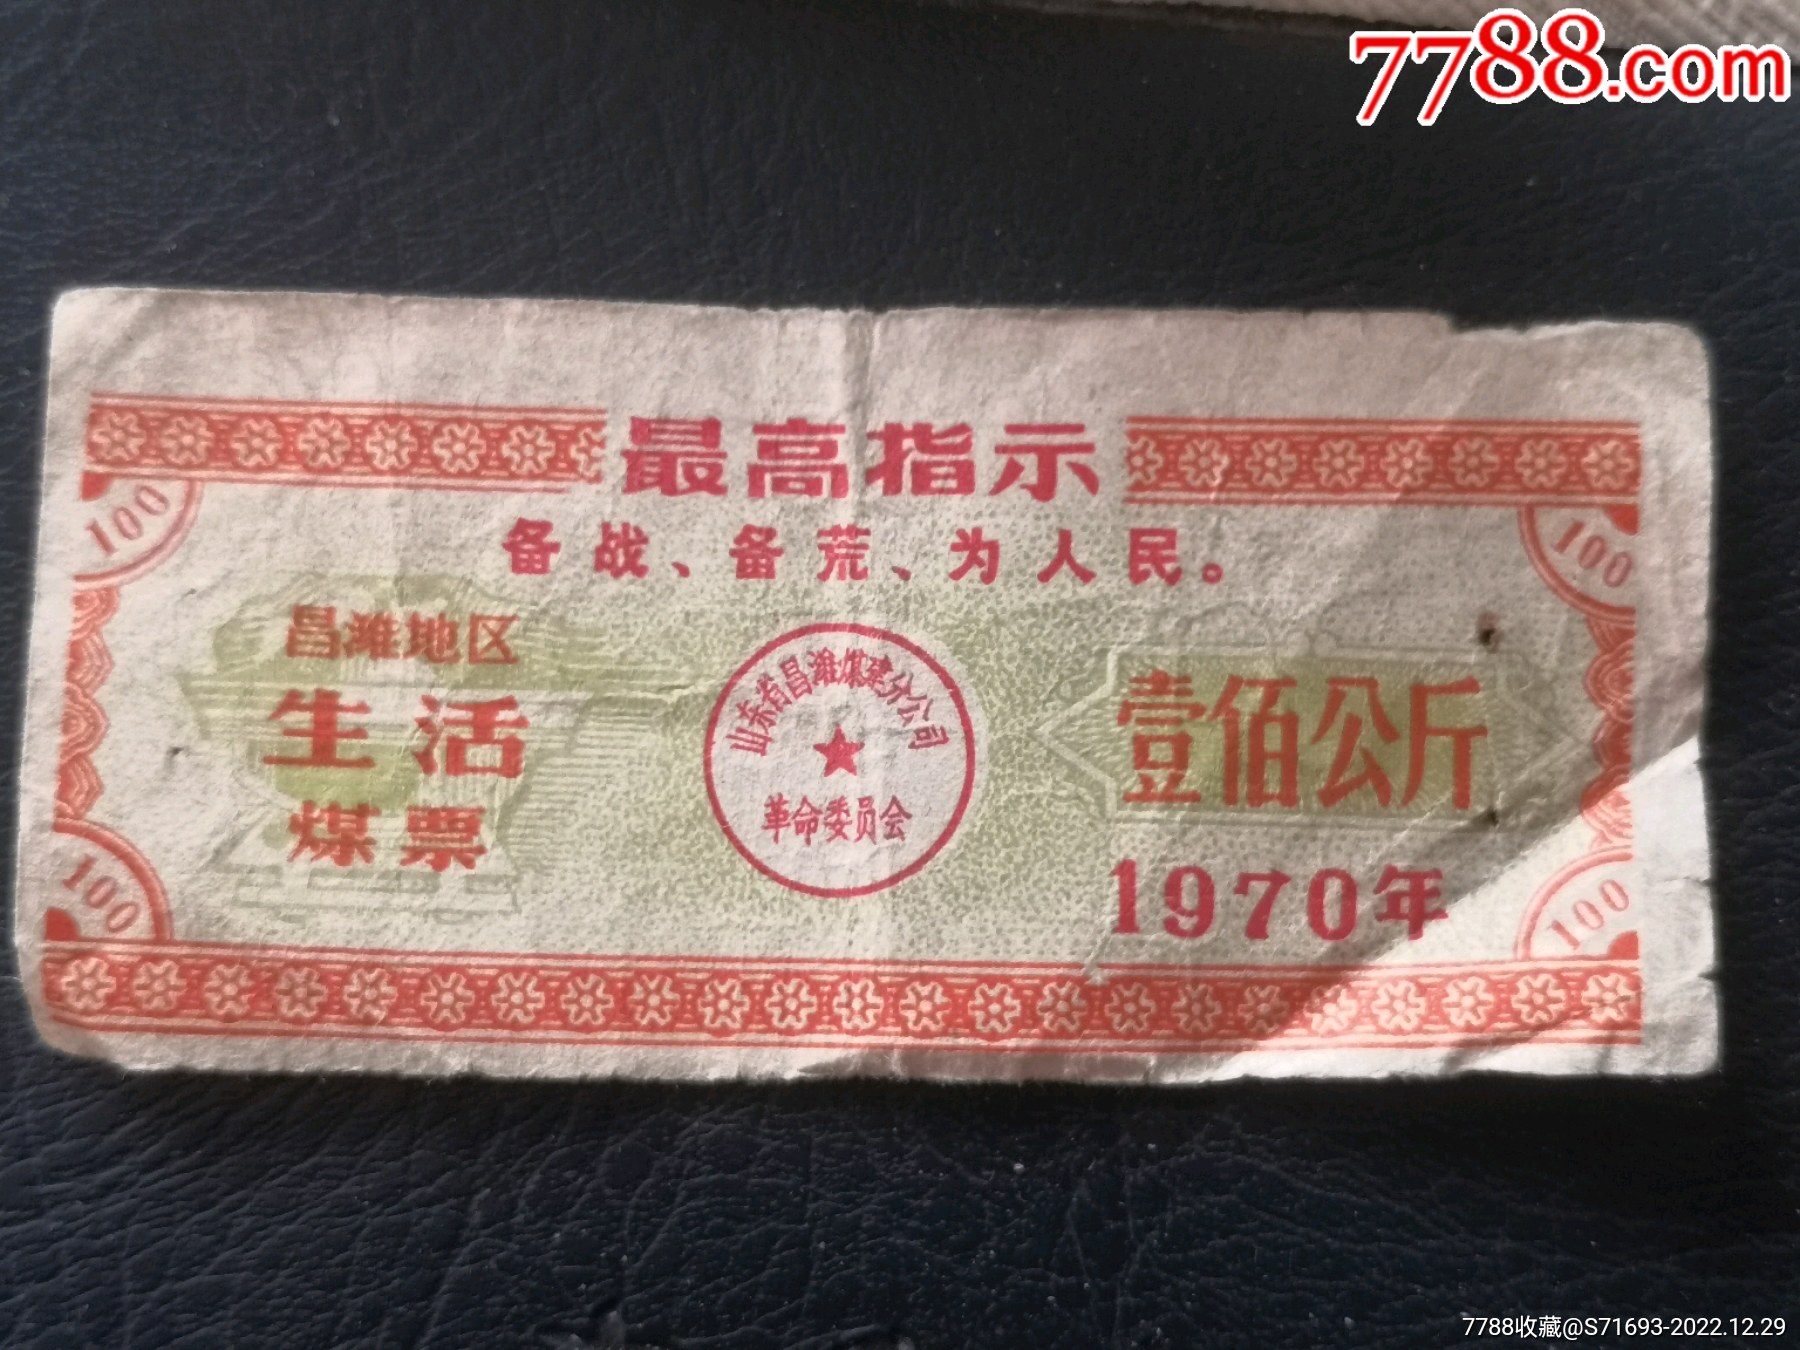 1992年4月九江县煤炭公司煤票150公斤-价格:2元-se96876776-煤气/燃料票-零售-7788收藏__收藏热线